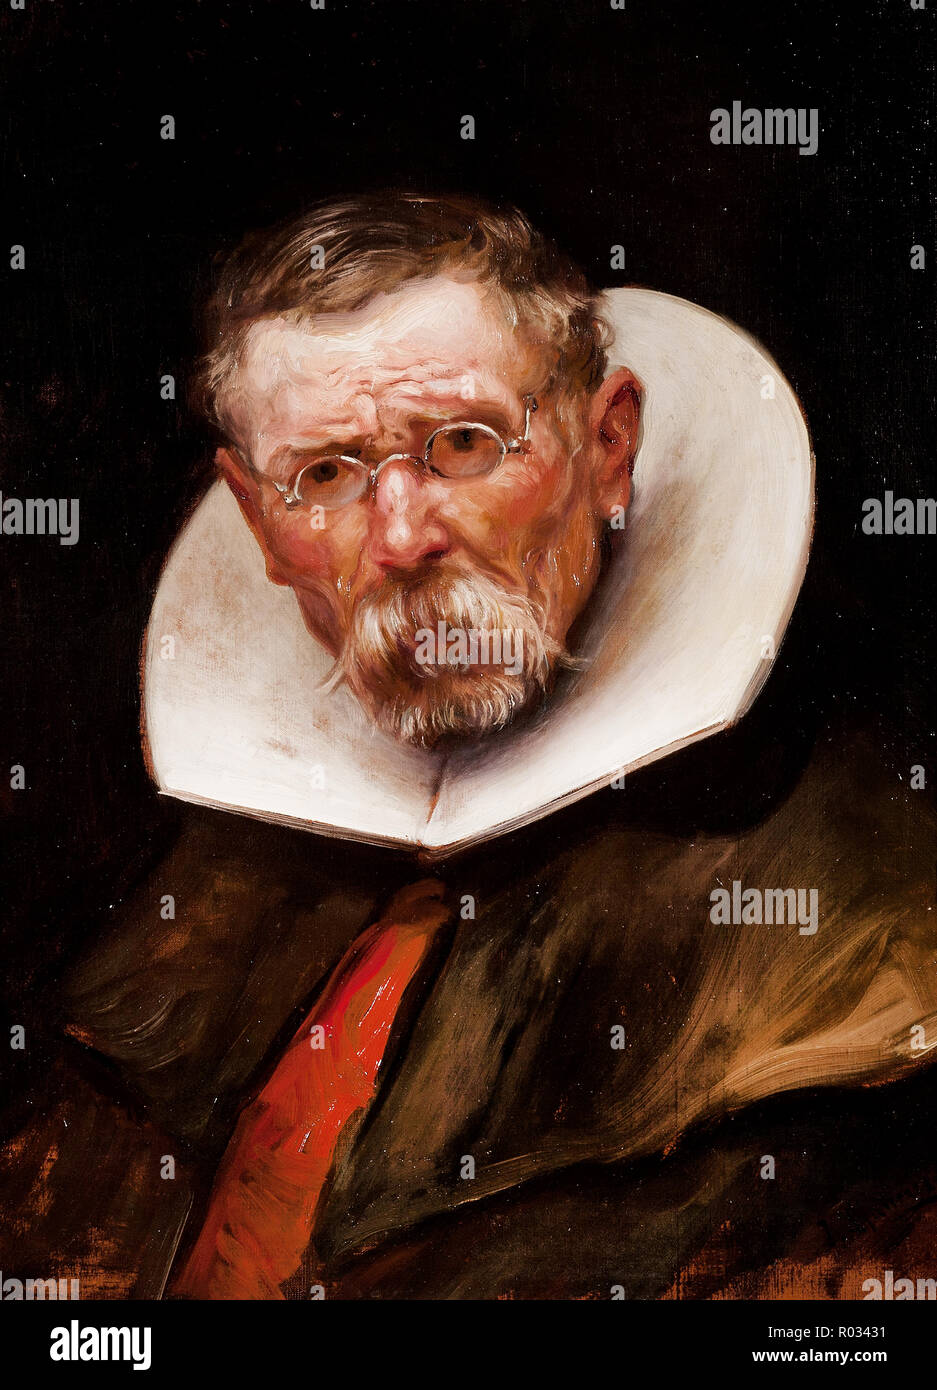 Jose San Bartolome Llaneces, Portrait eines älteren Mannes, gekleidet im Stil des Herrschaft Philipps III, 1900 Öl auf Leinwand, Fundación Banco Santander, Madrid, Spanien. Stockfoto